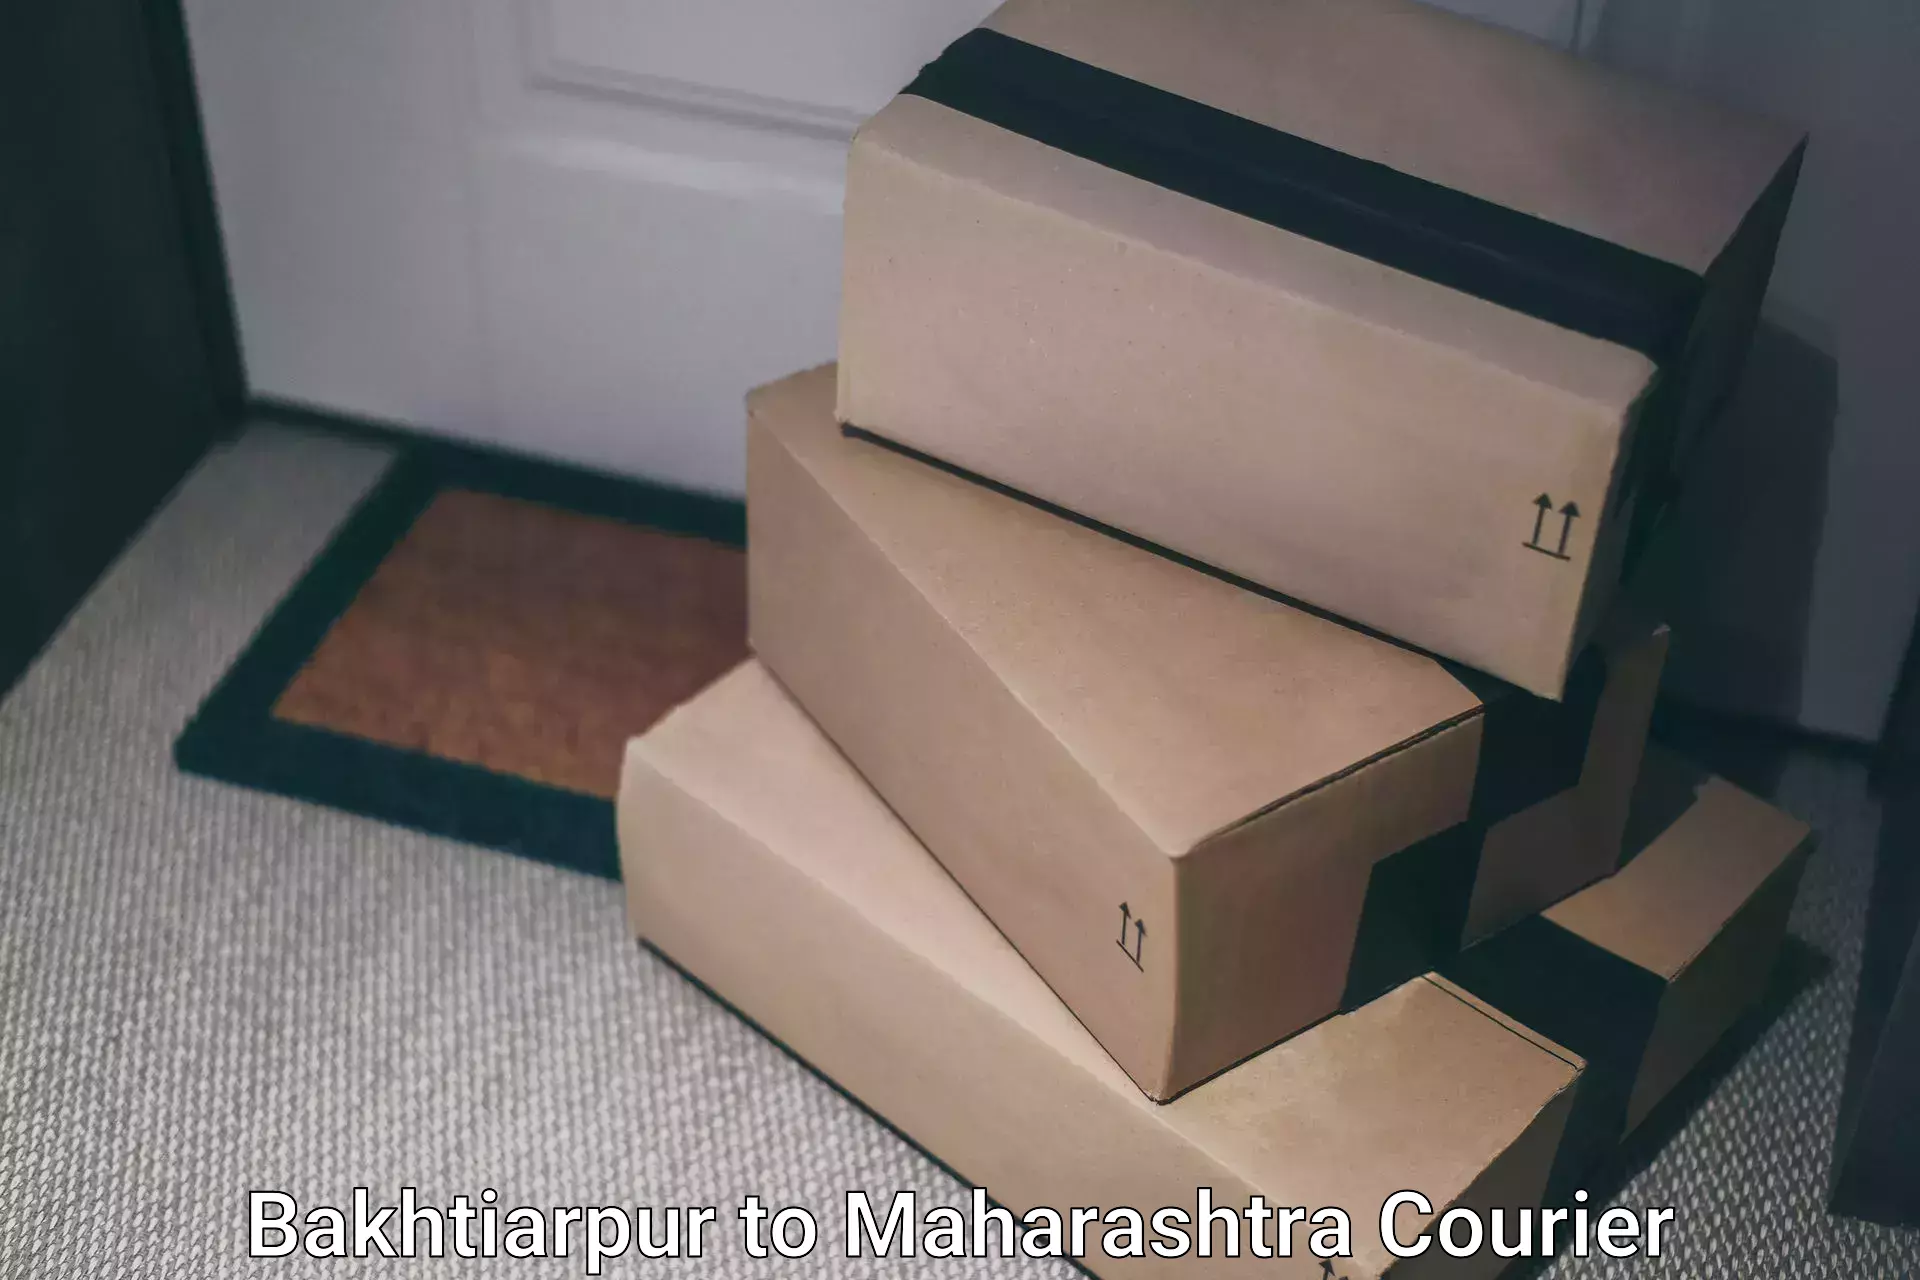 Courier service comparison Bakhtiarpur to Amdapur